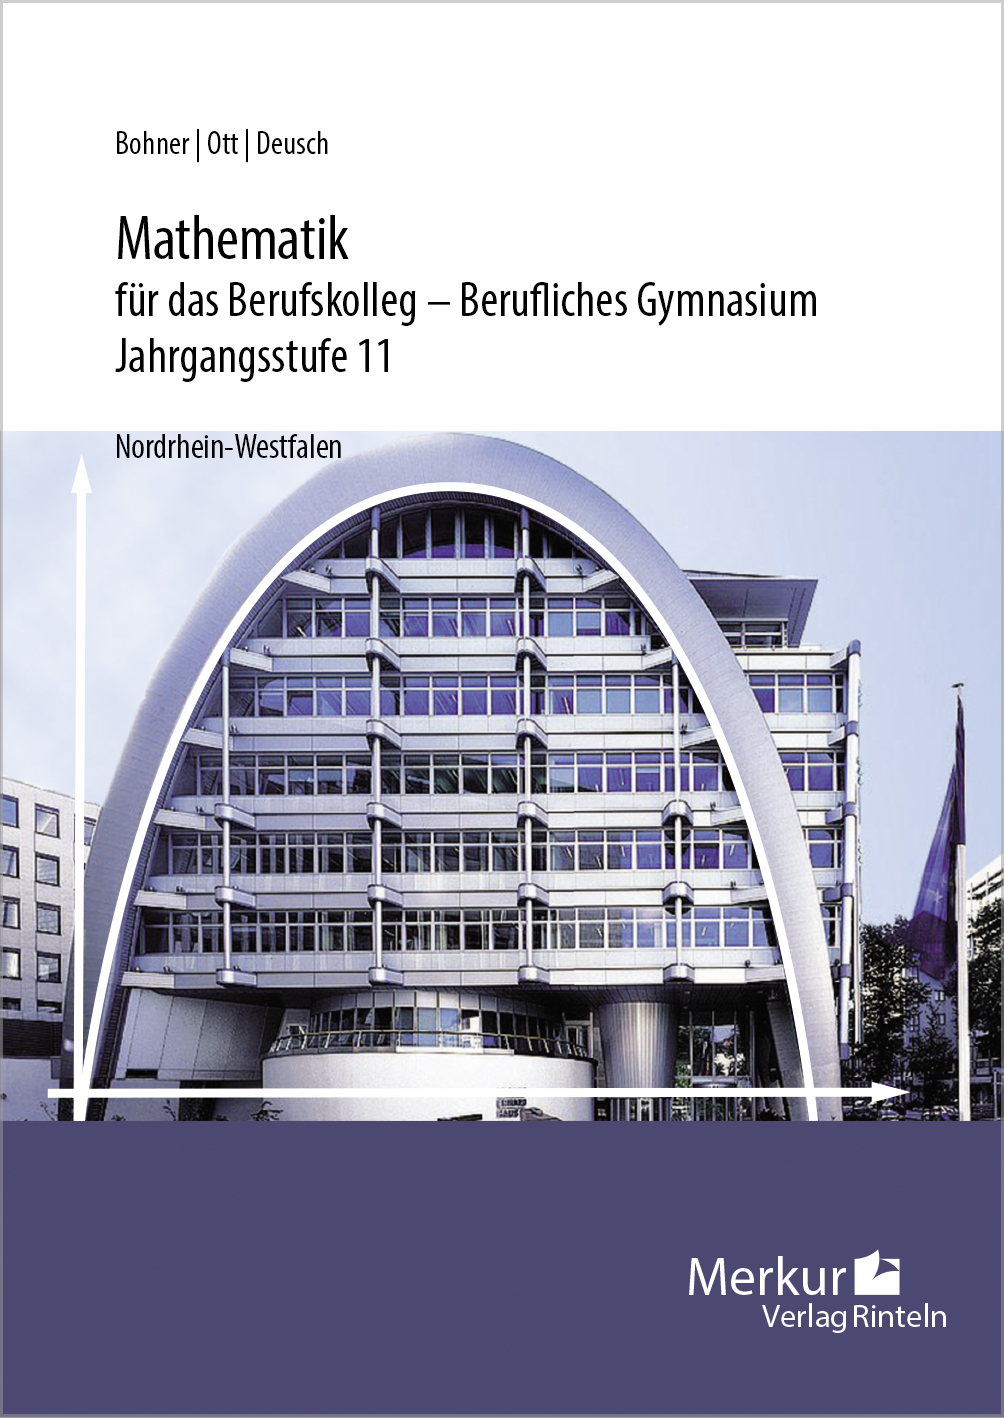 Mathematik für das Berufskolleg - Berufliches Gymnasium Jahrgangsstufe 11 (NRW)